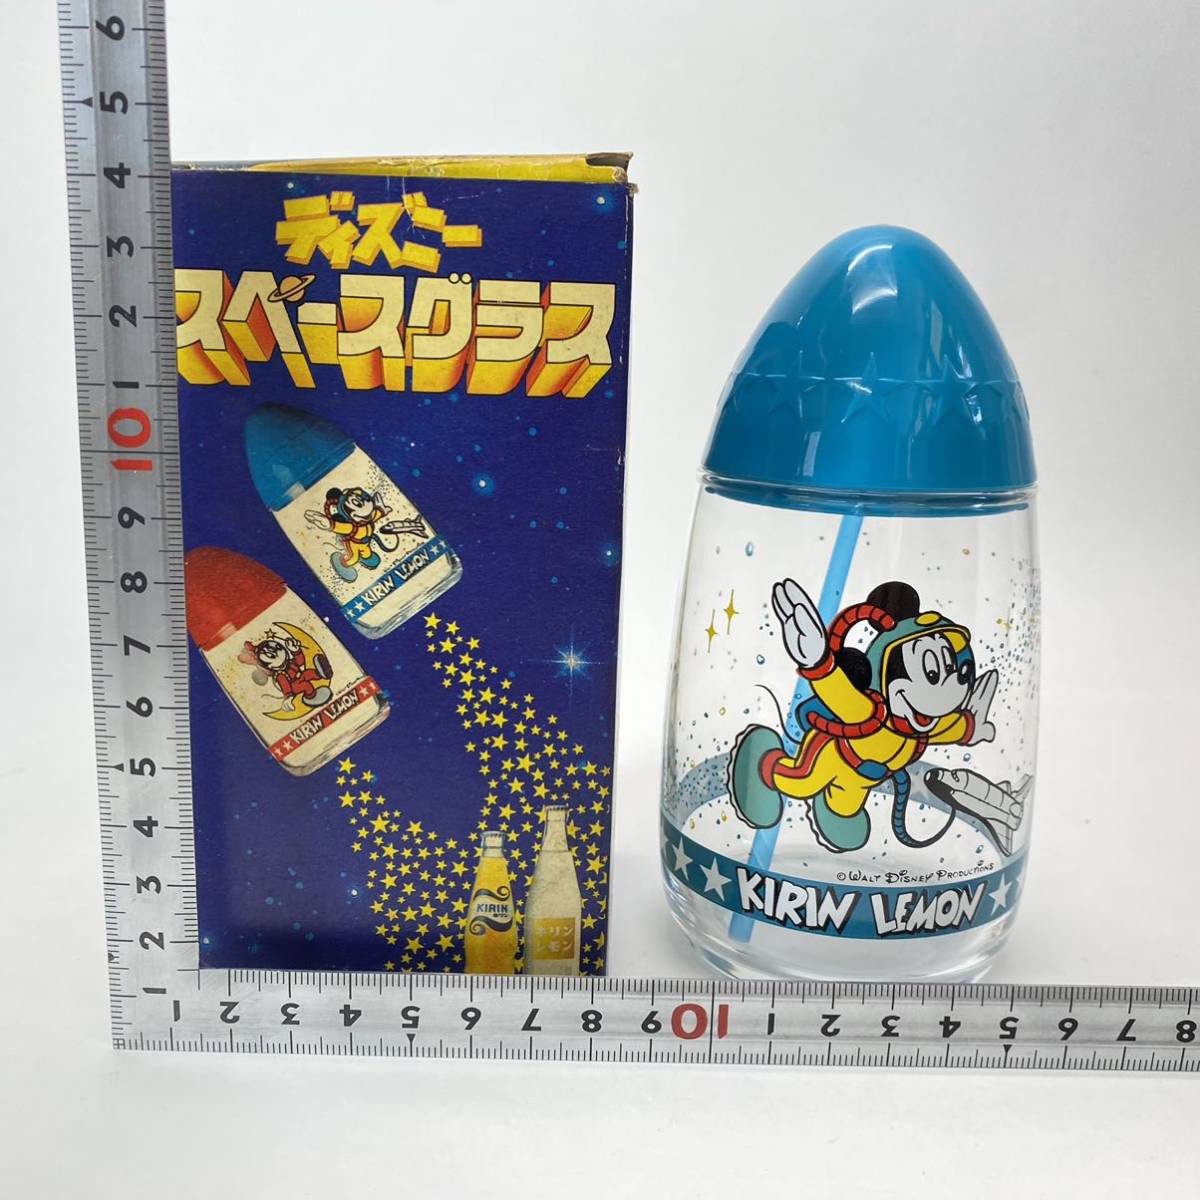 KIRIN LEMON жираф лимон Disney Space стакан Mickey Novelty соломинка с ящиком Space Age подлинная вещь не использовался текущее состояние товар 0305